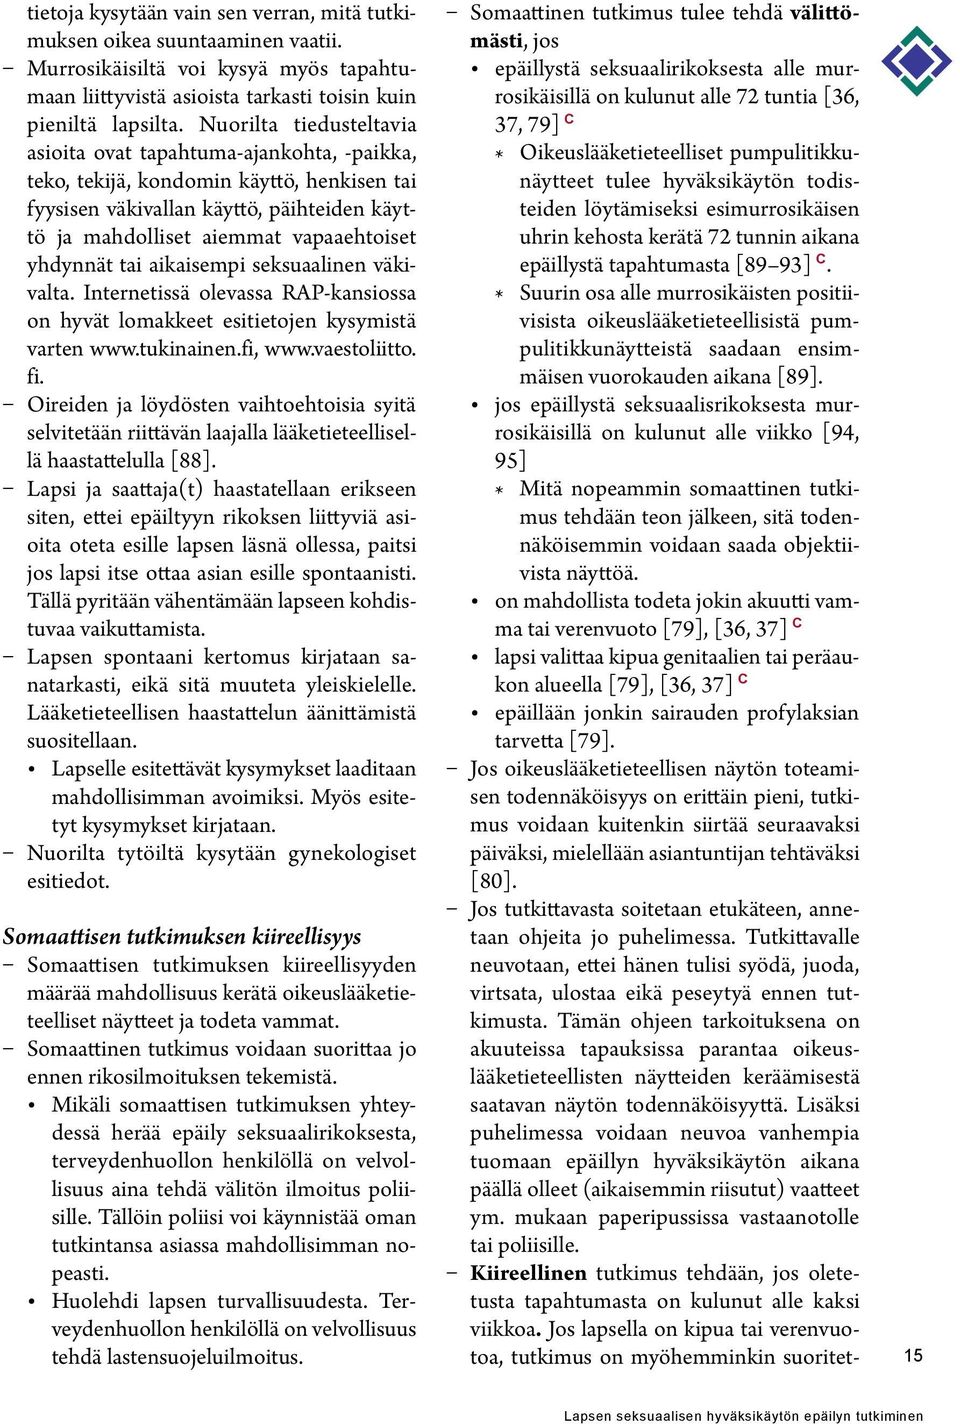 yhdynnät tai aikaisempi seksuaalinen väkivalta. Internetissä olevassa RAP-kansiossa on hyvät lomakkeet esitietojen kysymistä varten www.tukinainen.fi, www.vaestoliitto. fi.